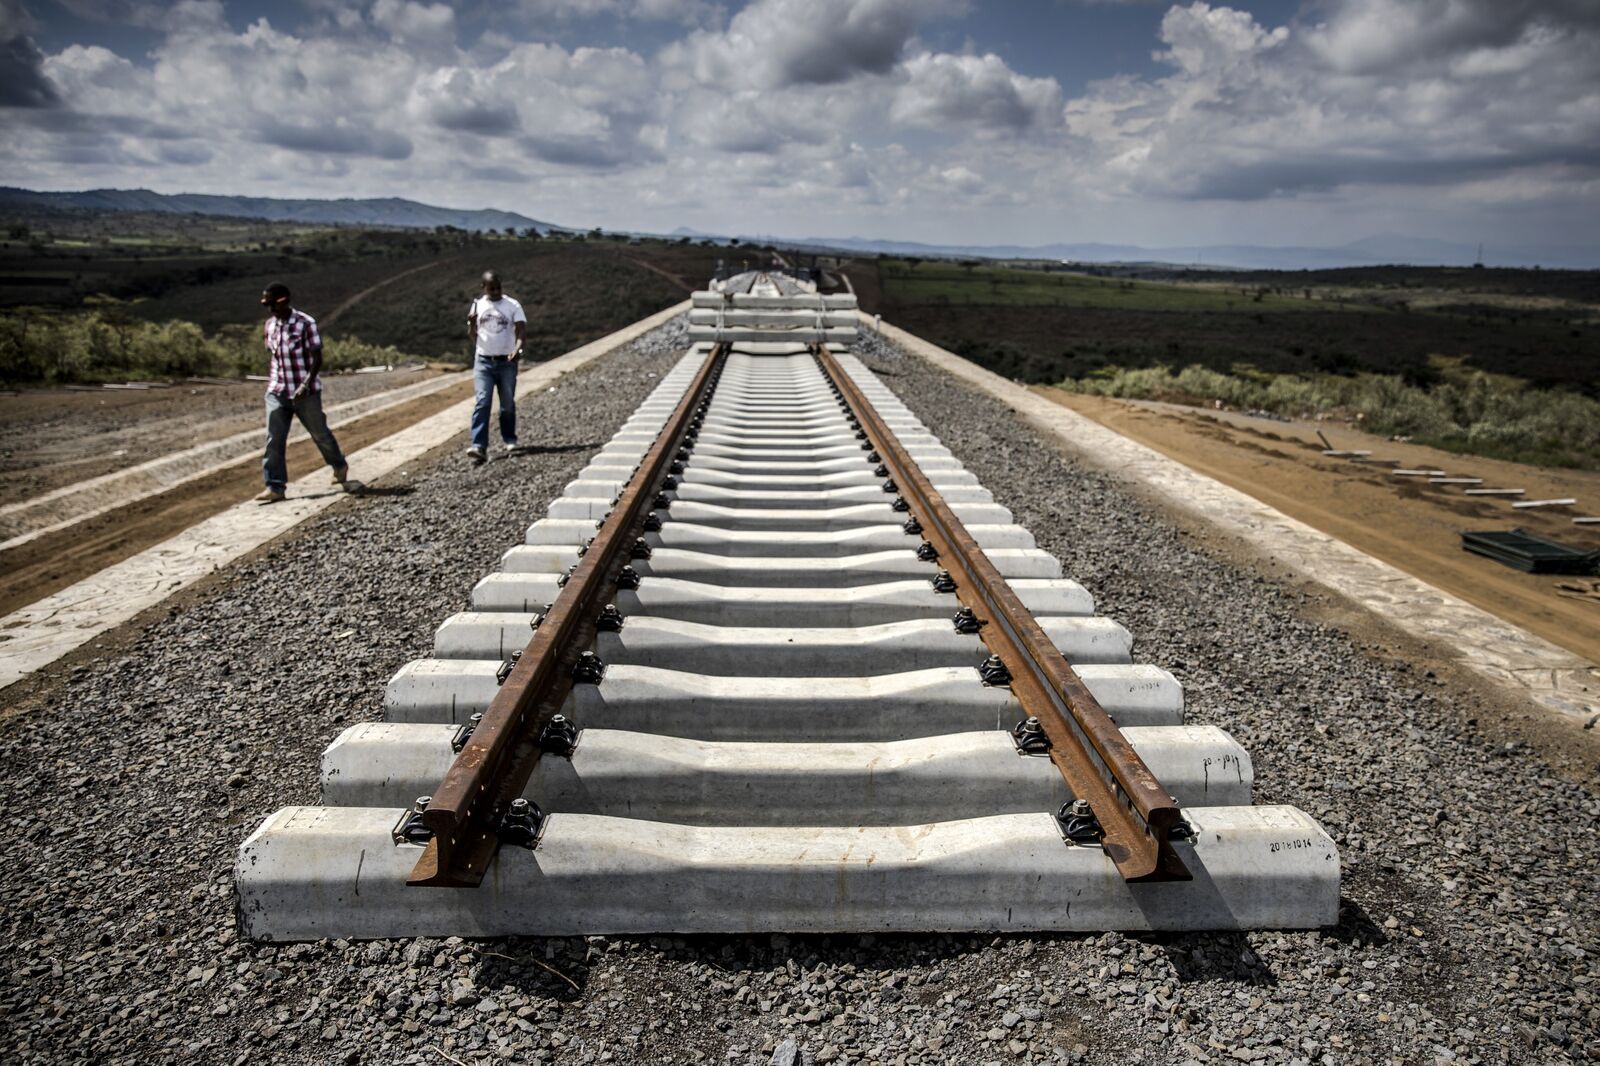 The end of the railway in Duka Moja, Kenya.